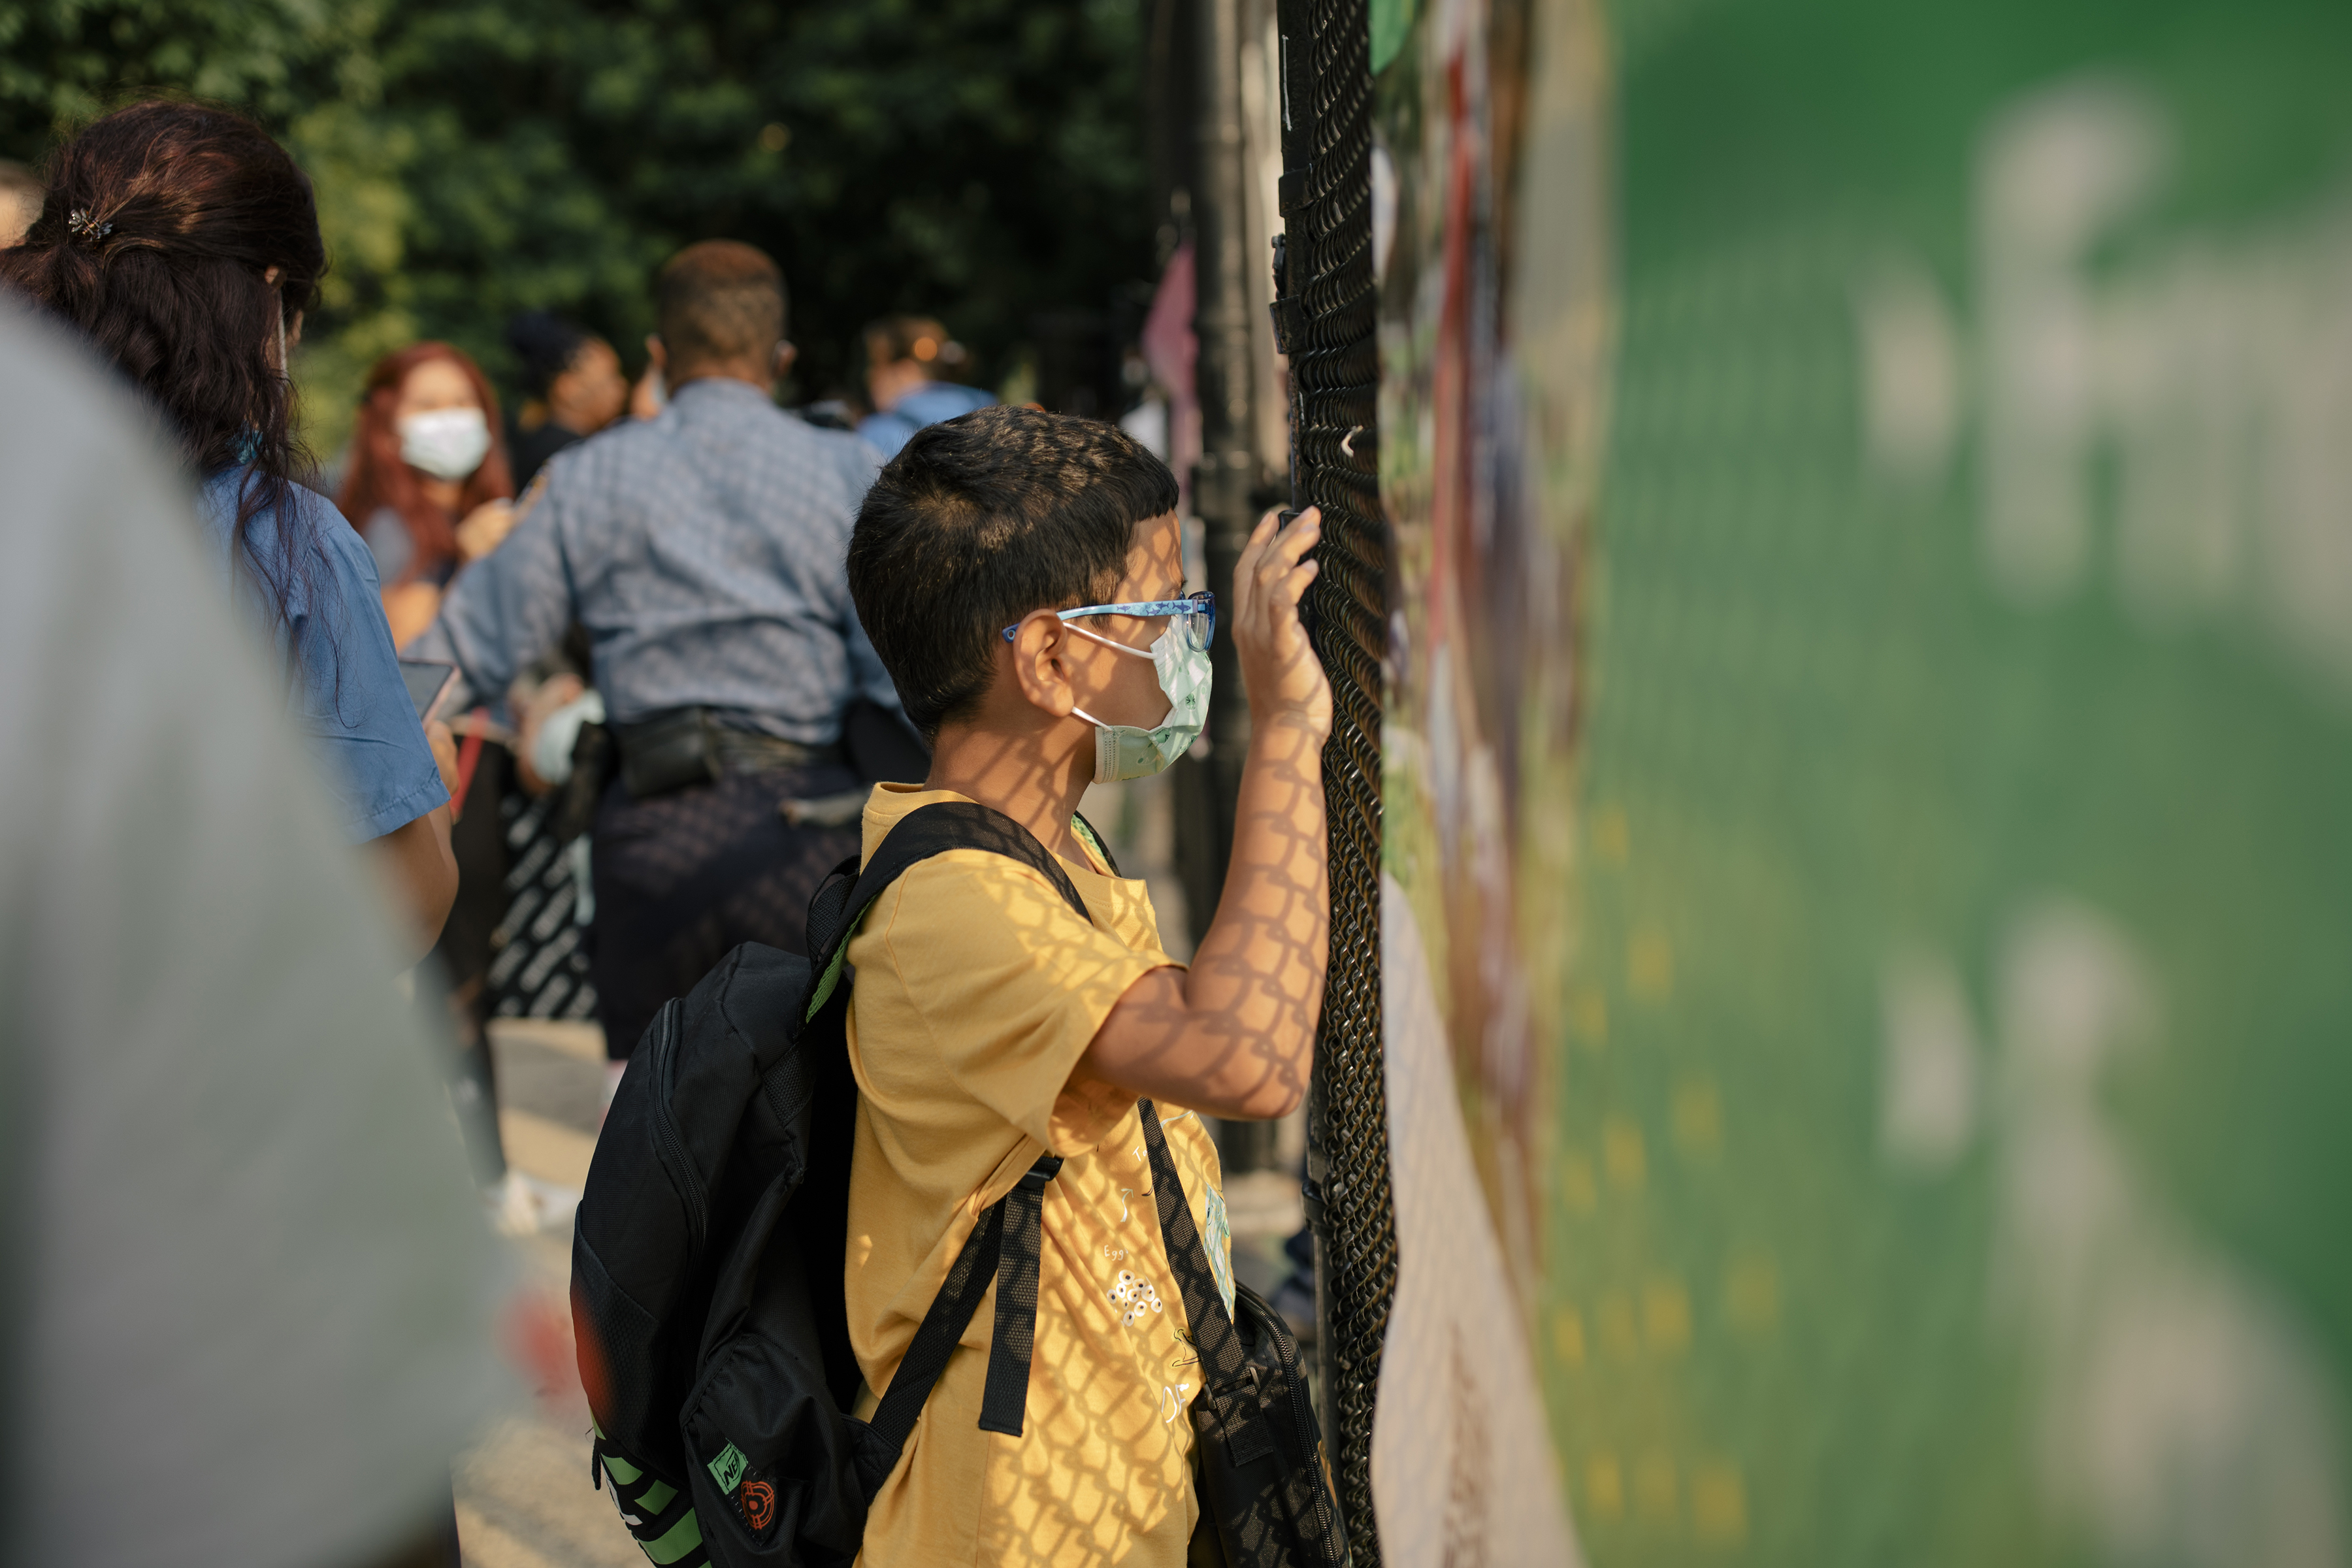 Un estudiante mira a través de una valla en una escuela del barrio Harlem del Este de Manhattan, el 6 de julio de 2021. (Foto Prensa Libre: Jose A. Alvarado Jr./The New York Times)